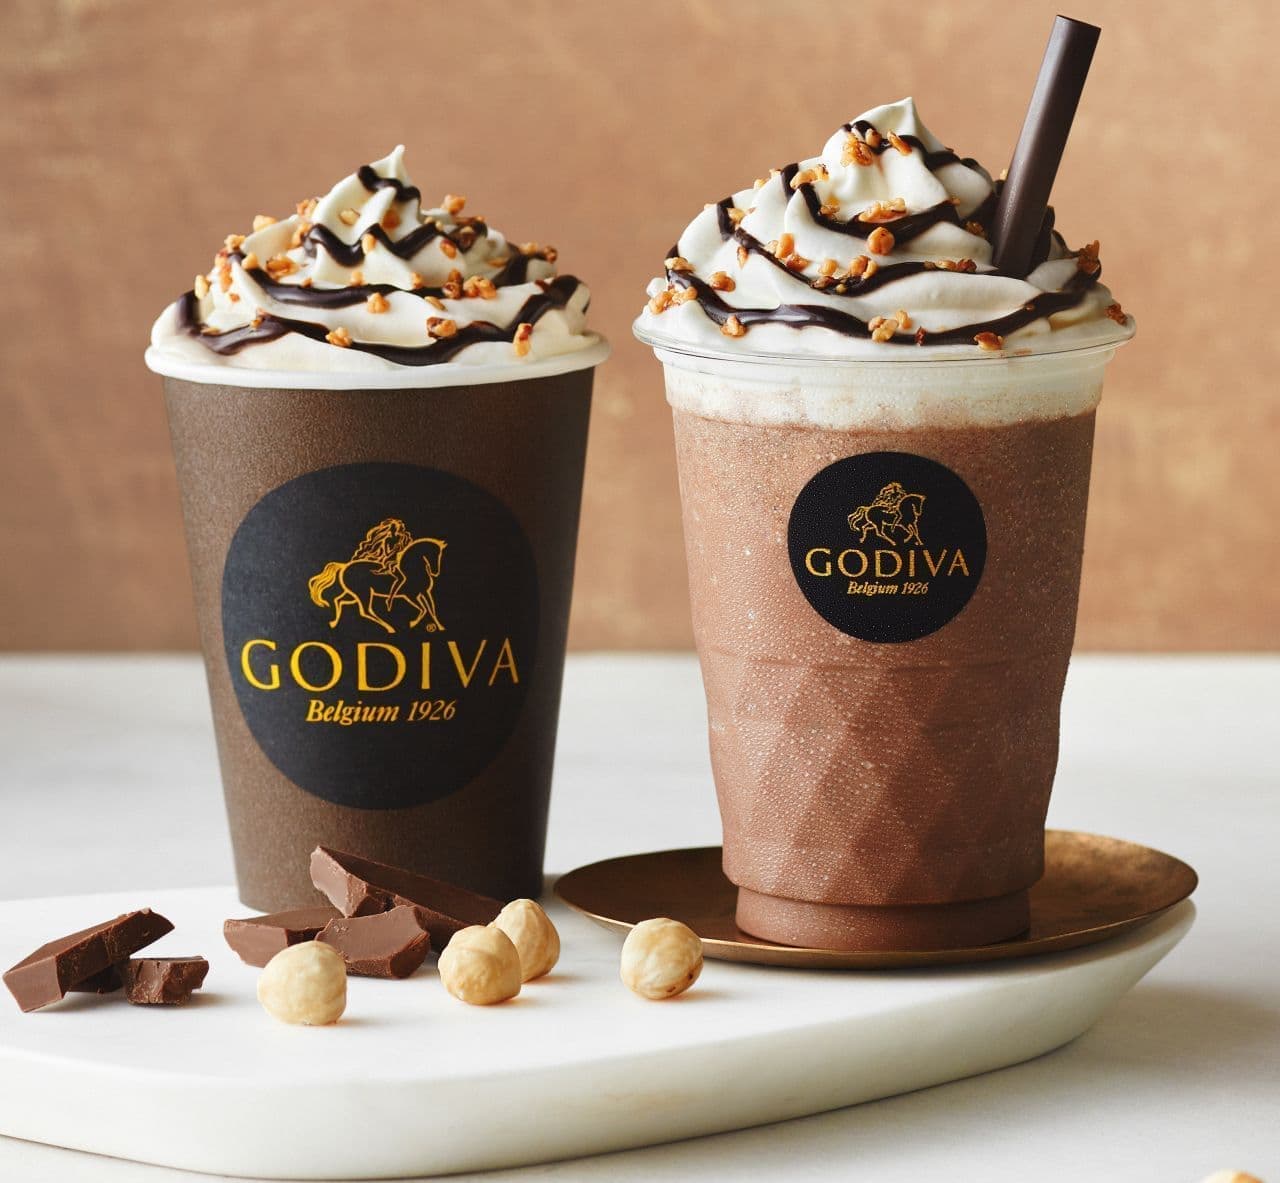 Godiva "Chocolate Milk Chocolate Gianduja" "Hot Chocolate Milk Chocolate Gianduja"